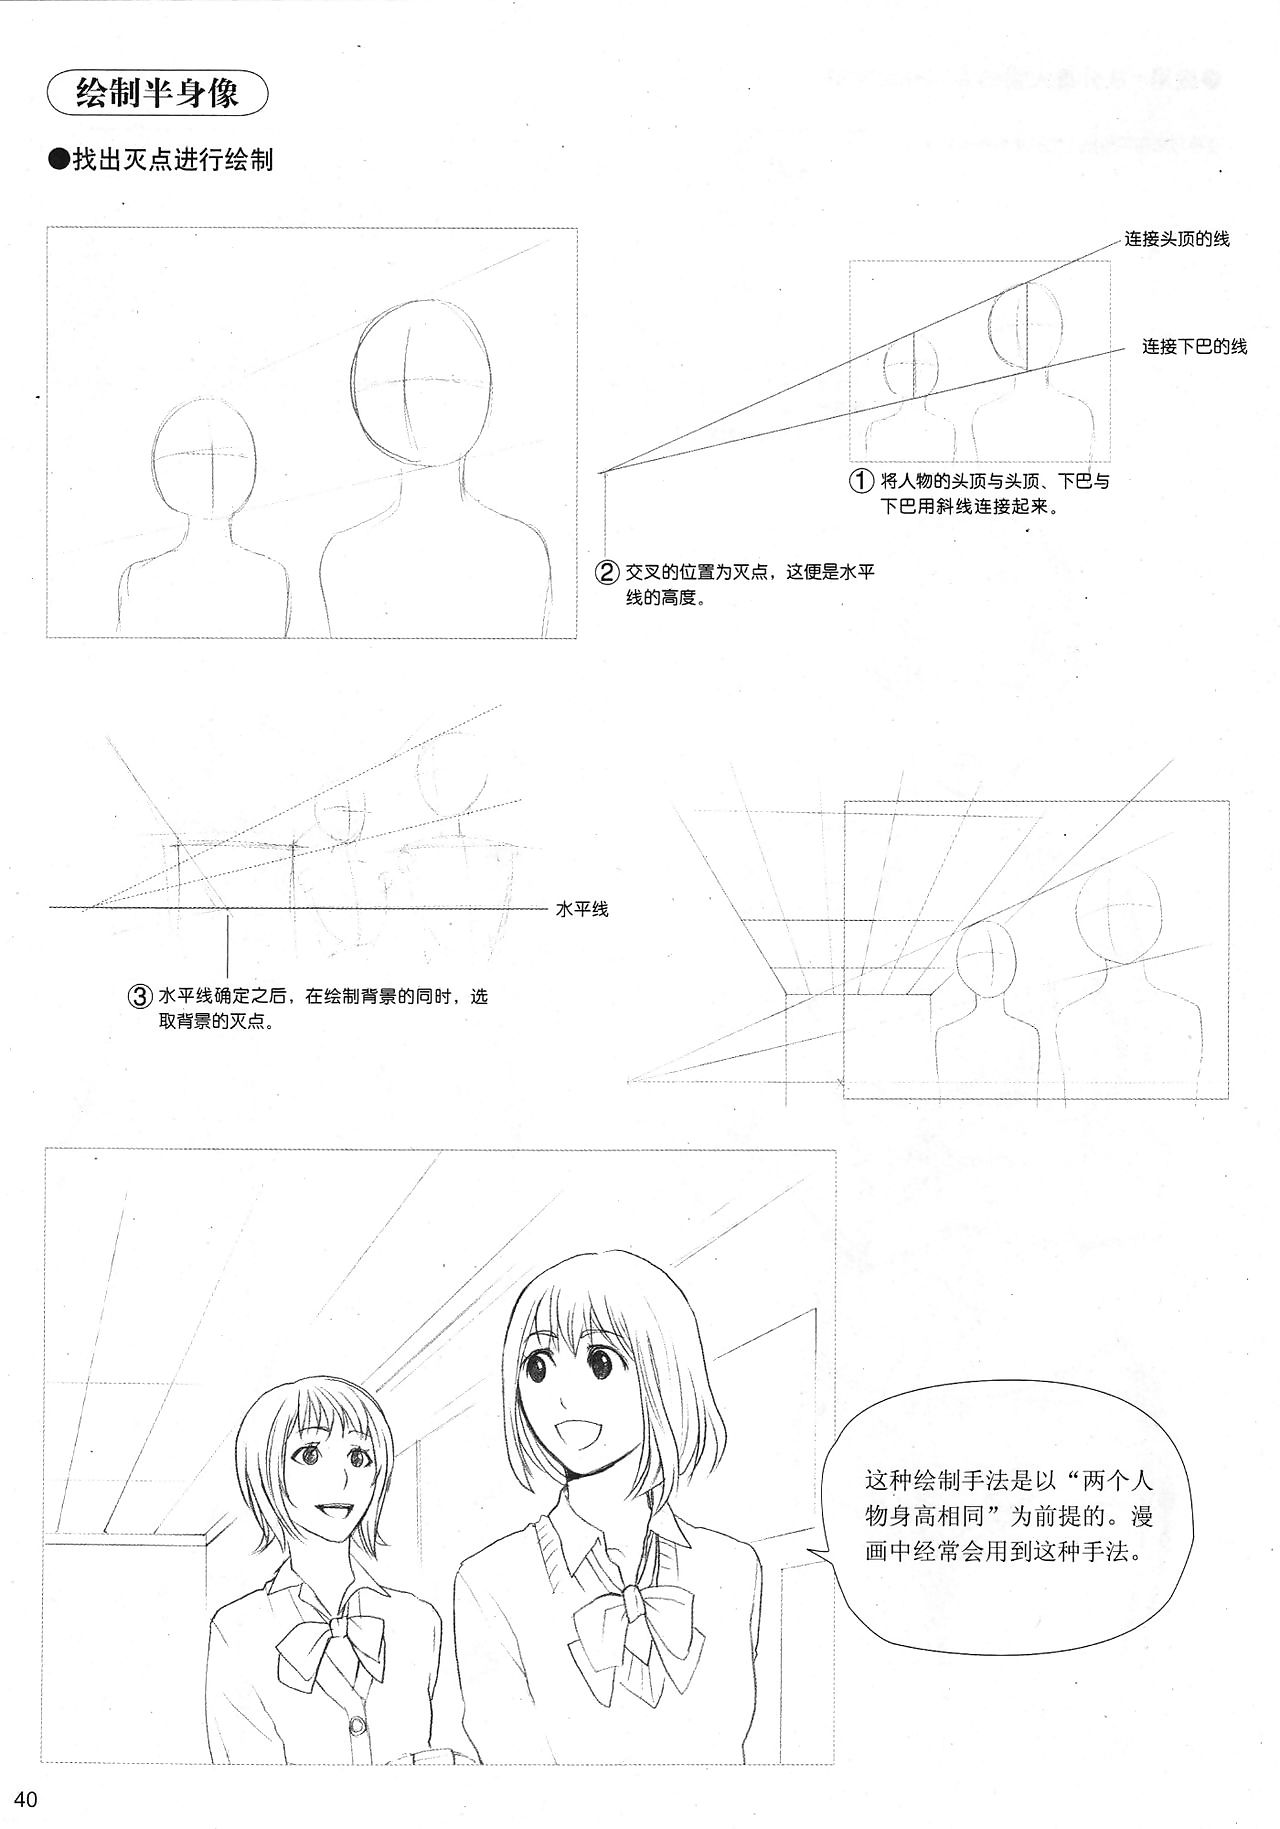 에 관계없이 는 방법 far 올 거 manga: 스케치 Manga 스타일 개발 로 4: 내 닫기 하기 범위 실 3